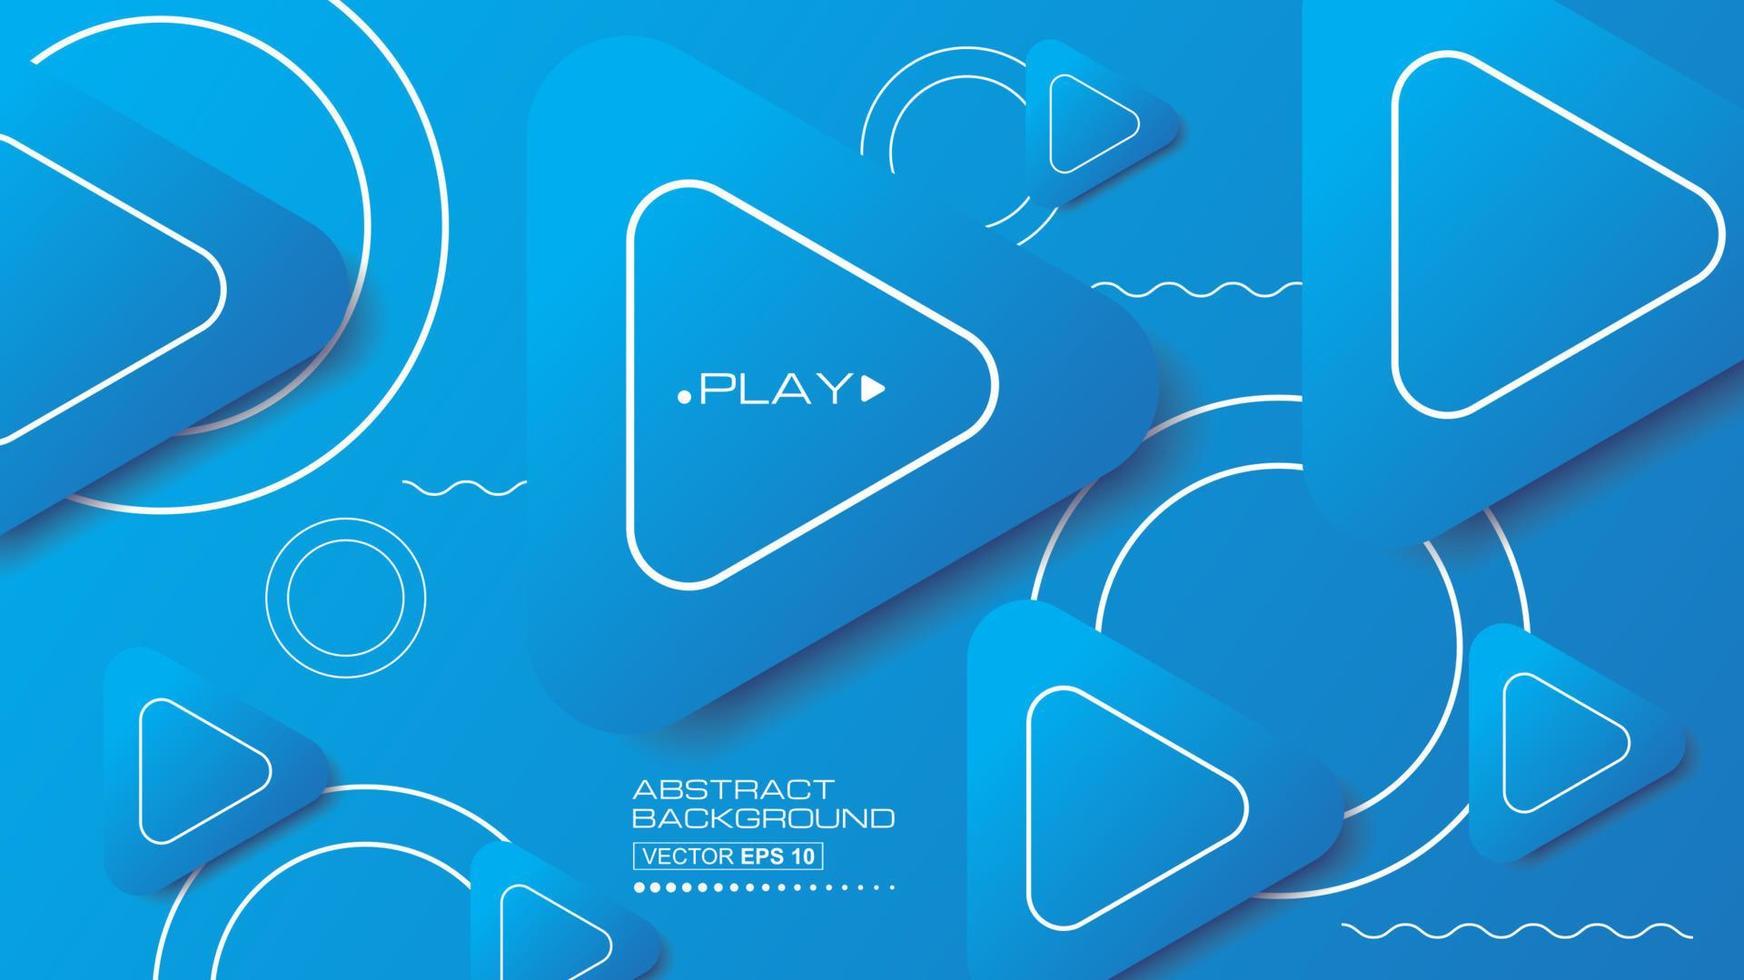 abstrakter Hintergrund modern mit Play-Button-Symbol futuristische Grafik. blaue hintergrundkreislinien. Vektor abstrakte Hintergrundillustration.